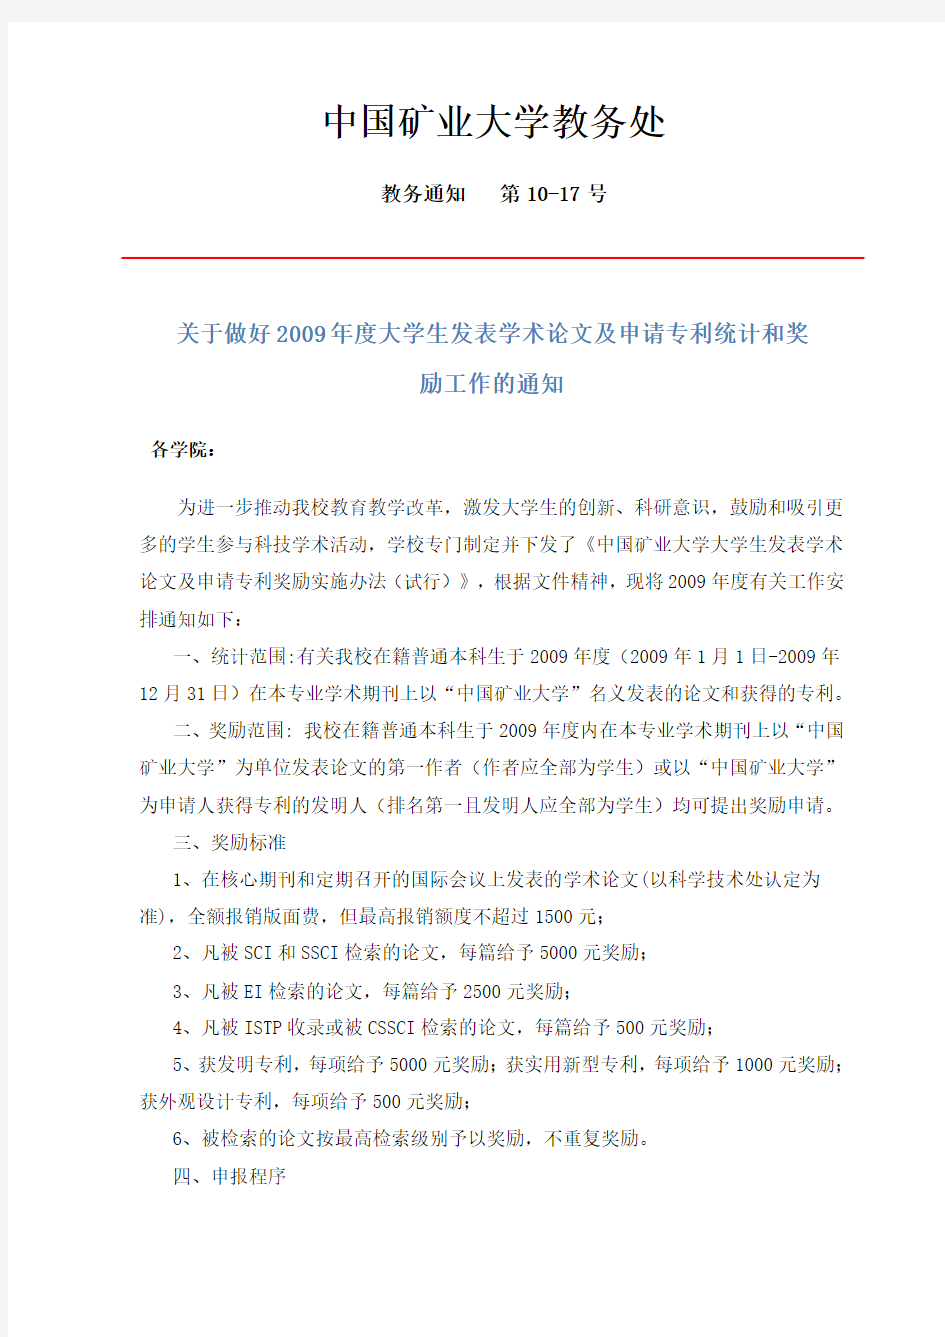 中国矿业大学教务处2010年 10月文件